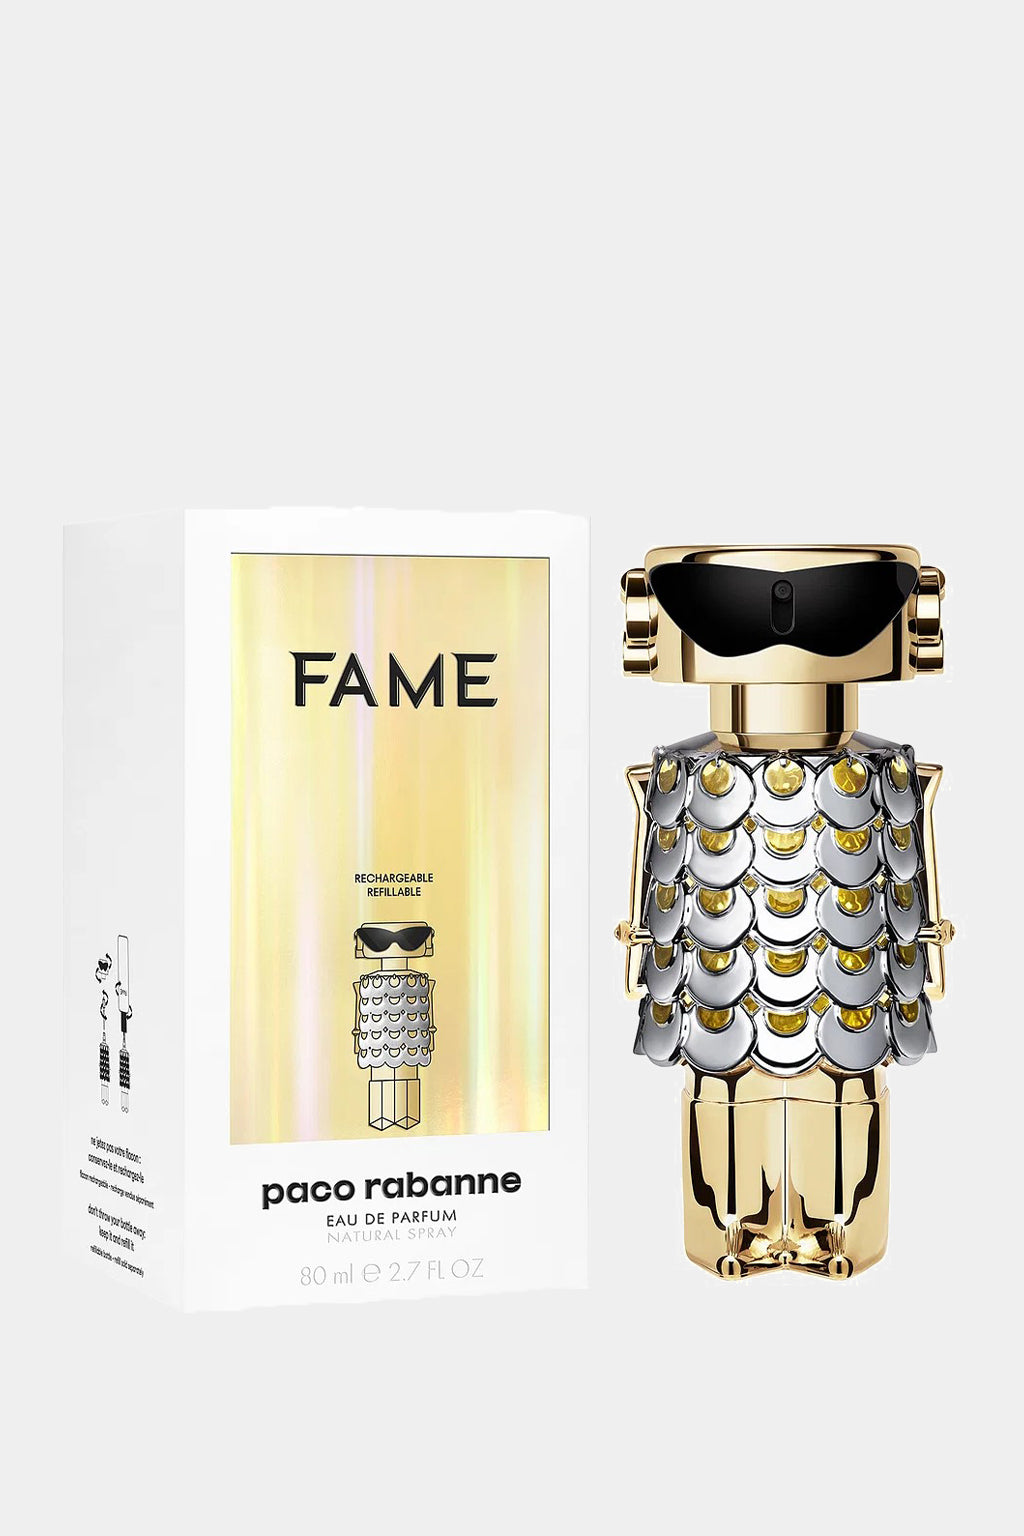 Paco Rabbane - Fame Eau de Parfum